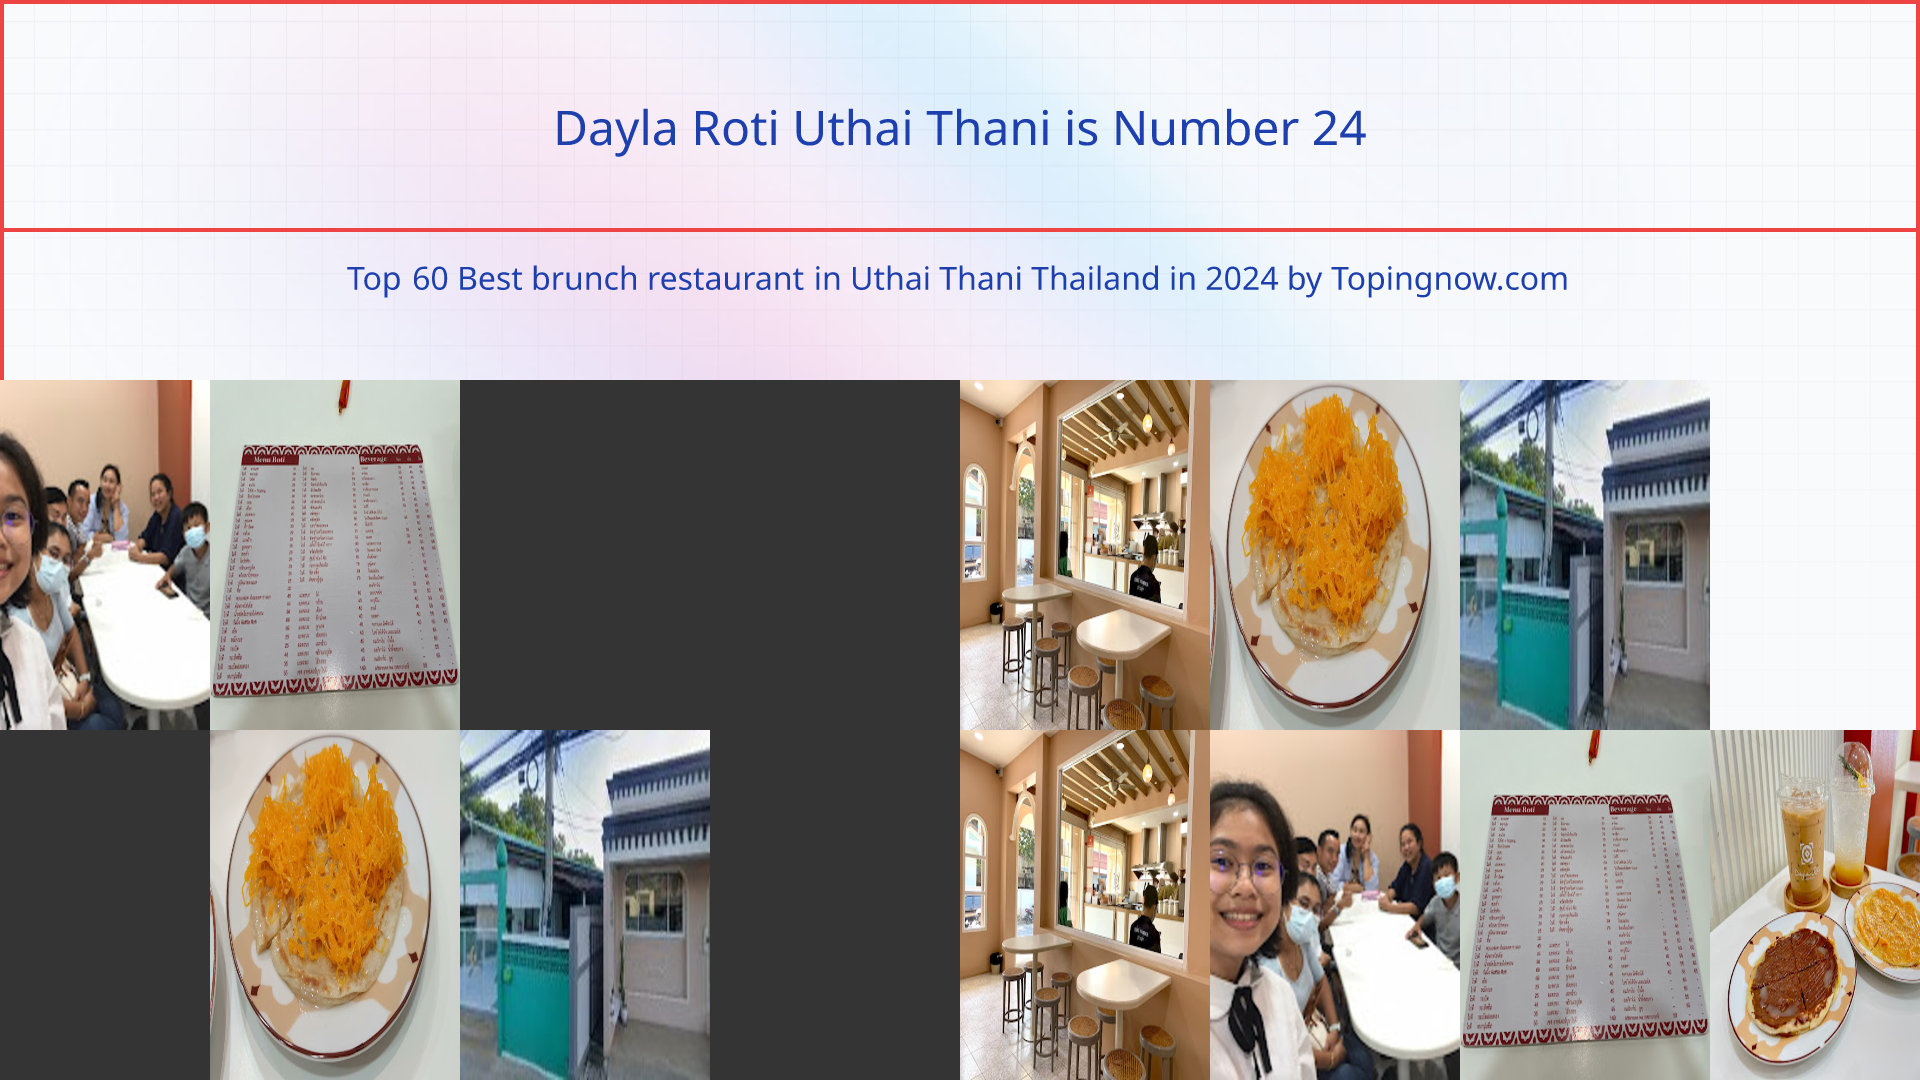 Dayla Roti Uthai Thani: Top 60 Best brunch restaurant in Uthai Thani Thailand in 2024